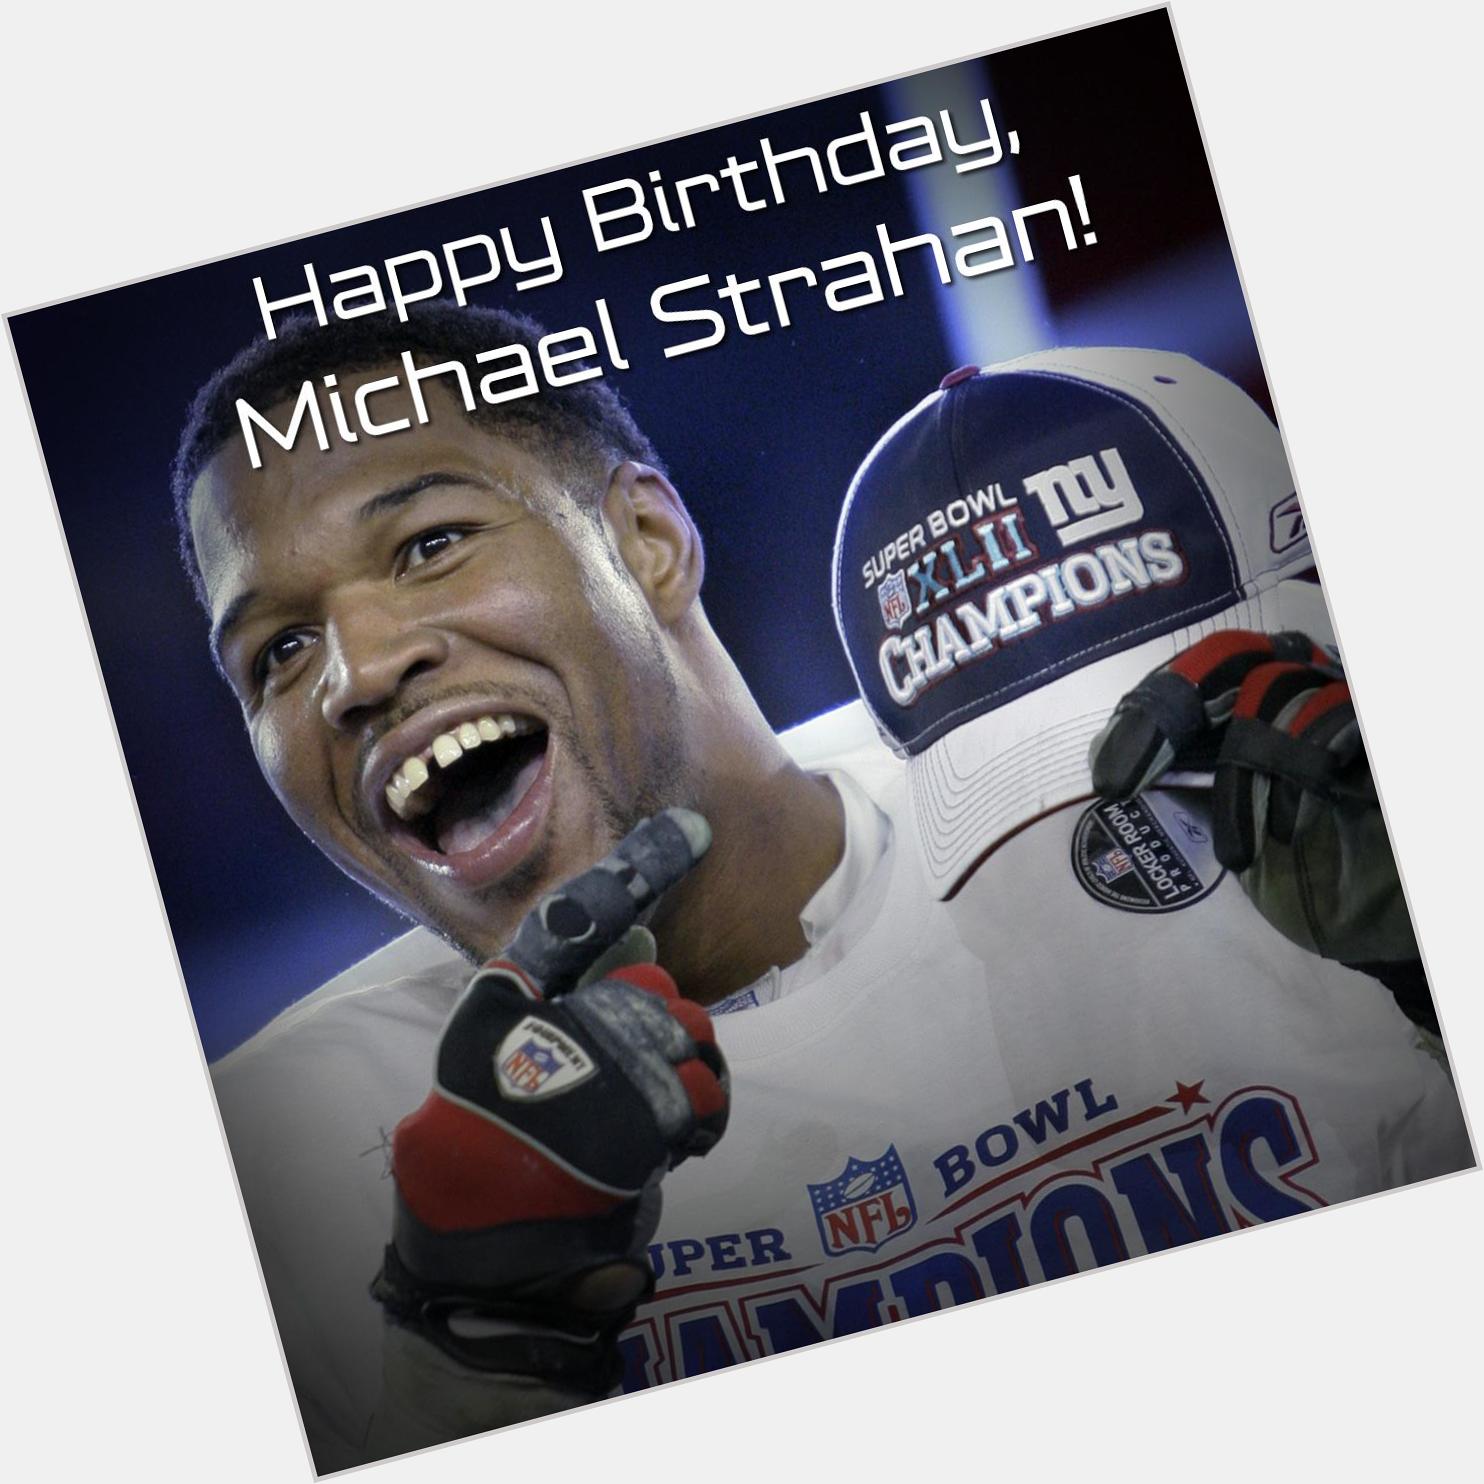 " Happy Birthday,  Happy Birthday Michael Strahan!!!